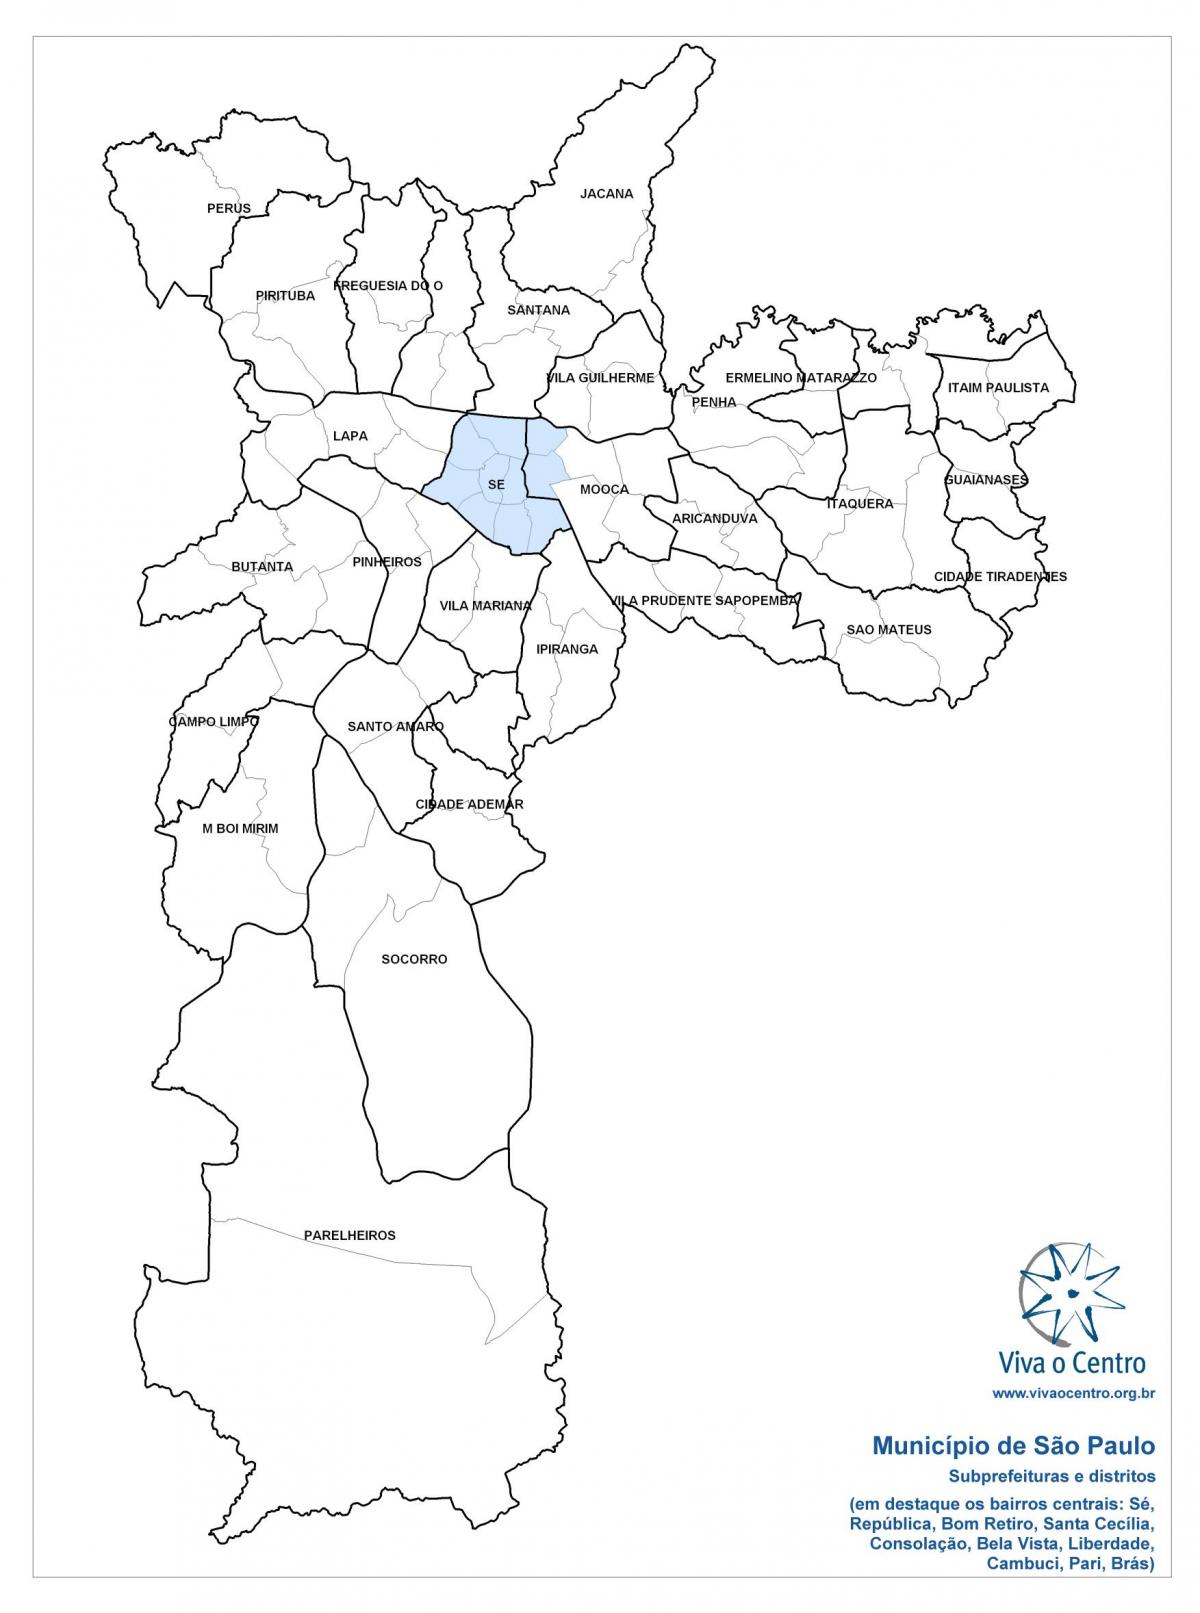 નકશો સેન્ટ્રલ ઝોન સાઓ પાઉલો